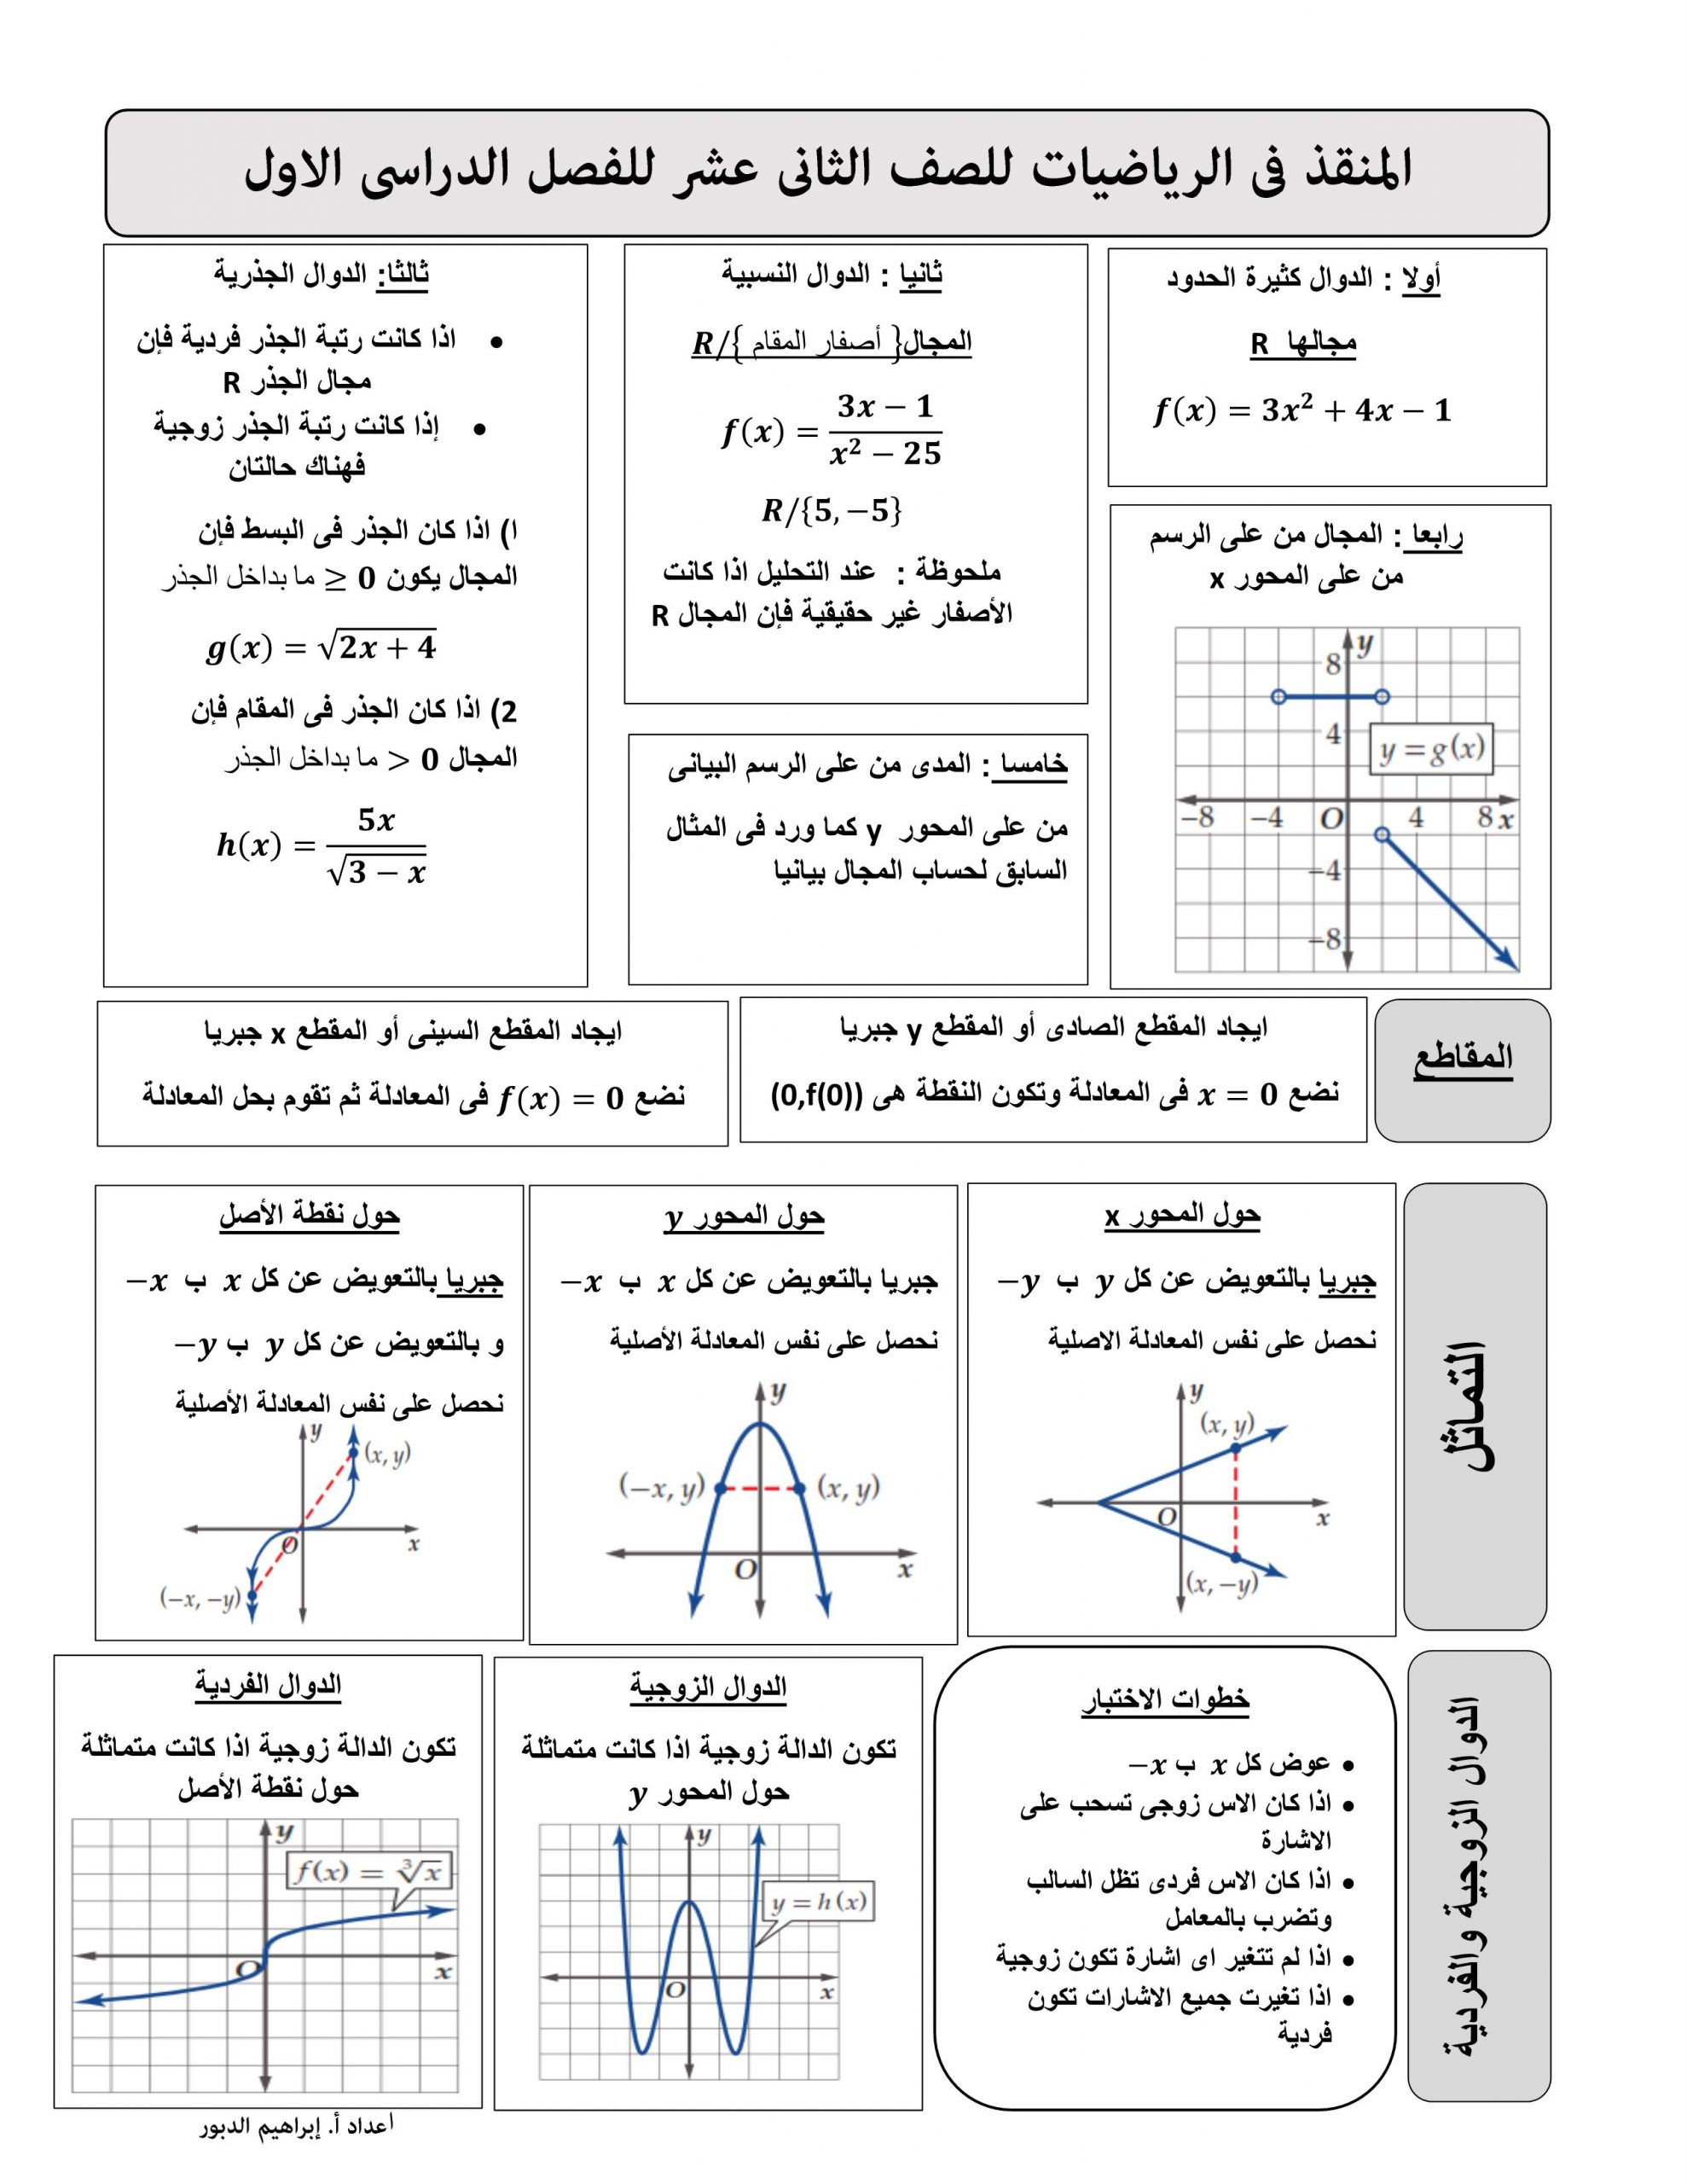 مذكرة المنقذ الفصل الدراسي الاول للصف الثاني عشر مادة الرياضيات المتكاملة